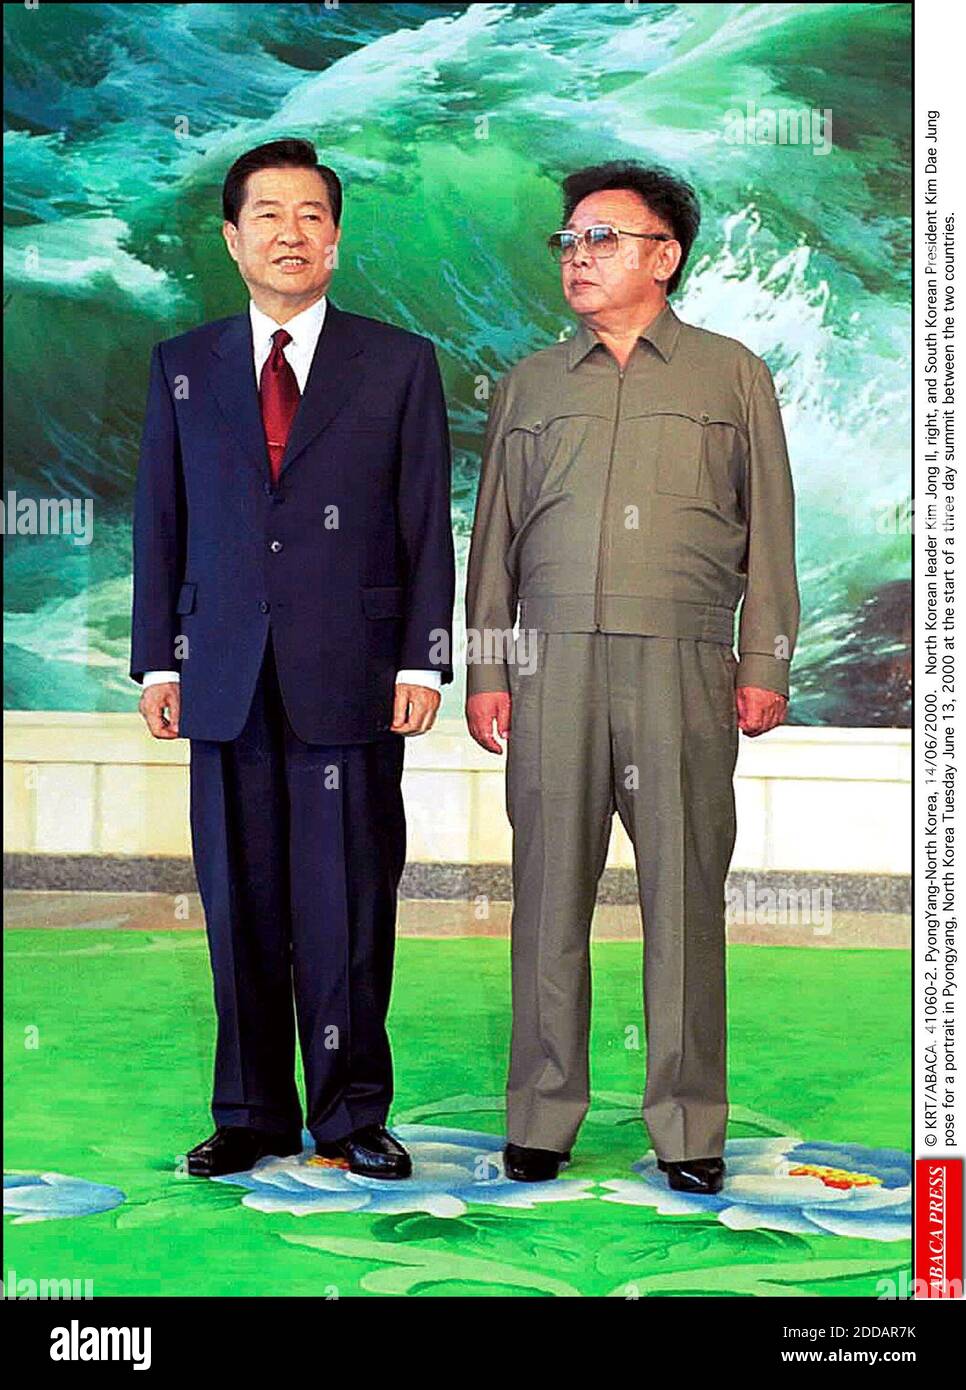 NESSUN FILM, NESSUN VIDEO, NESSUNA TV, NESSUN DOCUMENTARIO - il leader nordcoreano Kim Jong-il è morto all'età di 69 anni, la televisione statale ha annunciato. Kim, che ha guidato la nazione comunista dalla morte del padre nel 1994, è morto su un treno durante la visita di una zona al di fuori della capitale, ha detto l'annuncio. Ha subito un colpo nel 2008 ed è stato assente dalla vista pubblica per mesi. Il suo successore designato è creduto essere il suo terzo figlio, Kim Jong-un, che è pensato per essere nel suo fine 20s. Foto file © KRT/ABACA. 41060-2. Pyongyang-Corea del Nord, 14/06/2000. Leader nordcoreano Kim Jong il, destra e sud Foto Stock